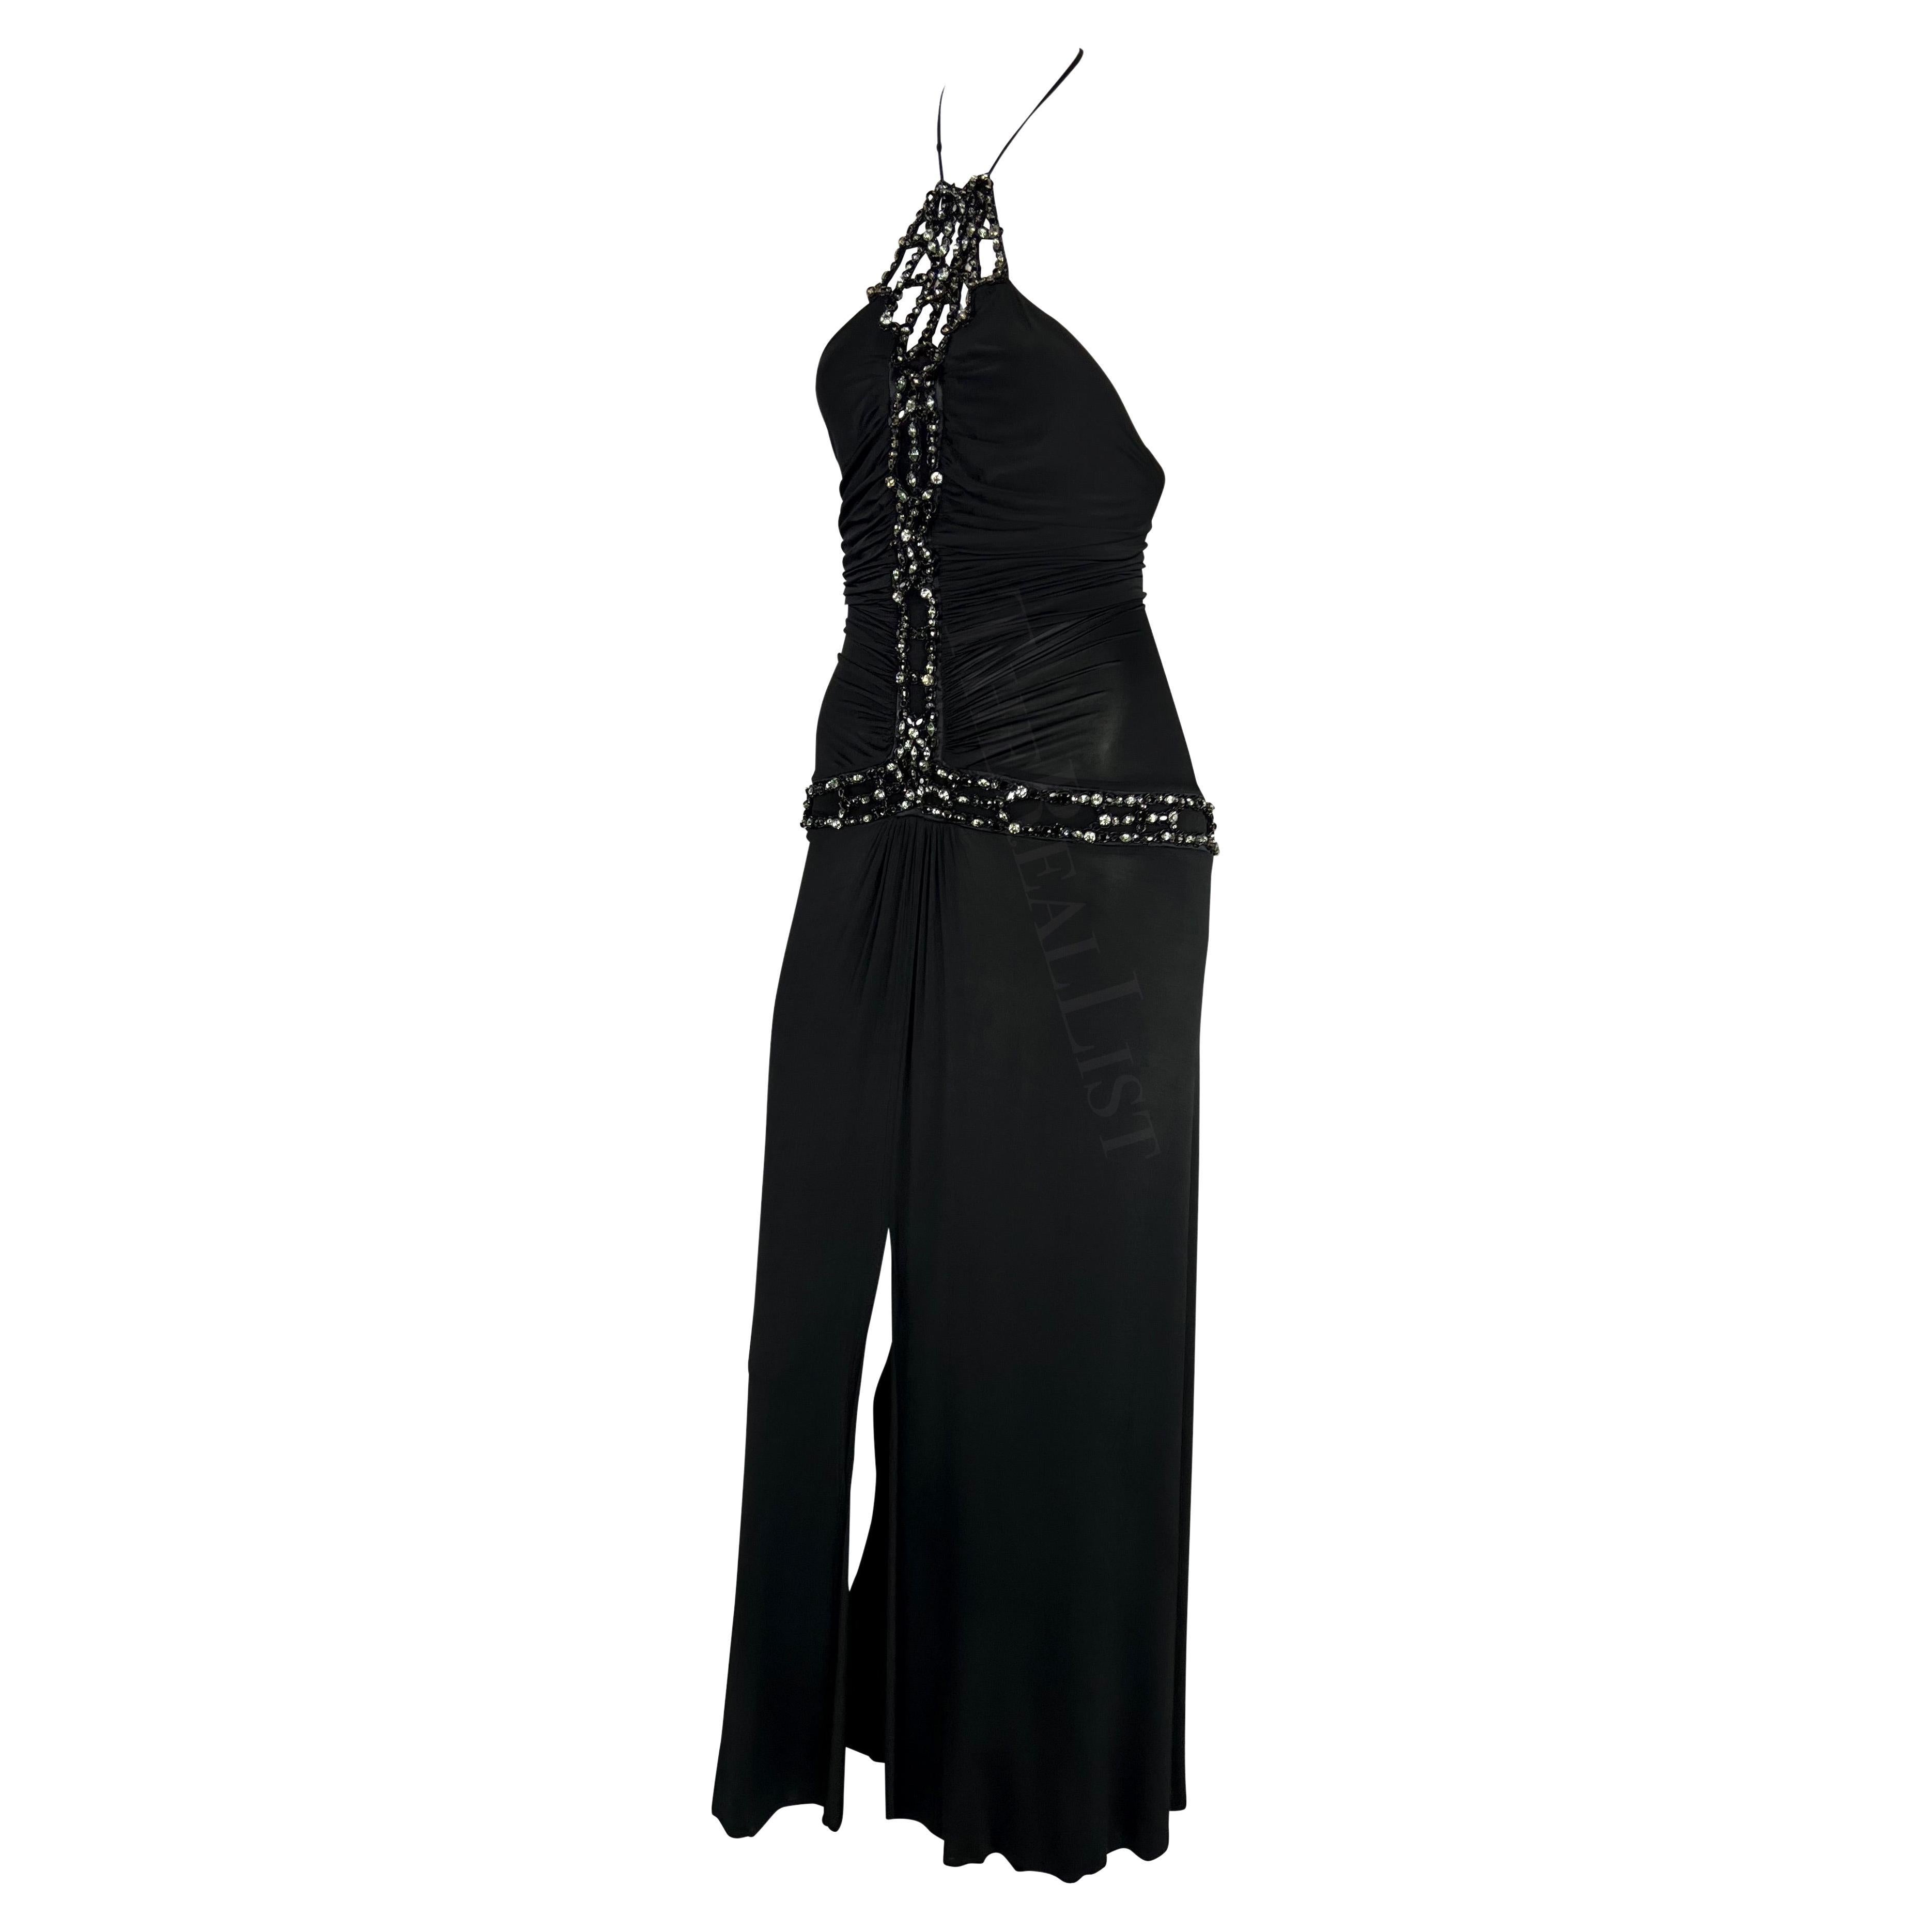 Elle présente une fabuleuse robe noire cintrée Roberto Cavalli. Issue de la collection Printemps/Été 2005, cette robe longue présente une encolure dos nu et des embellissements en strass sur le devant de la robe et autour des hanches. Cette robe